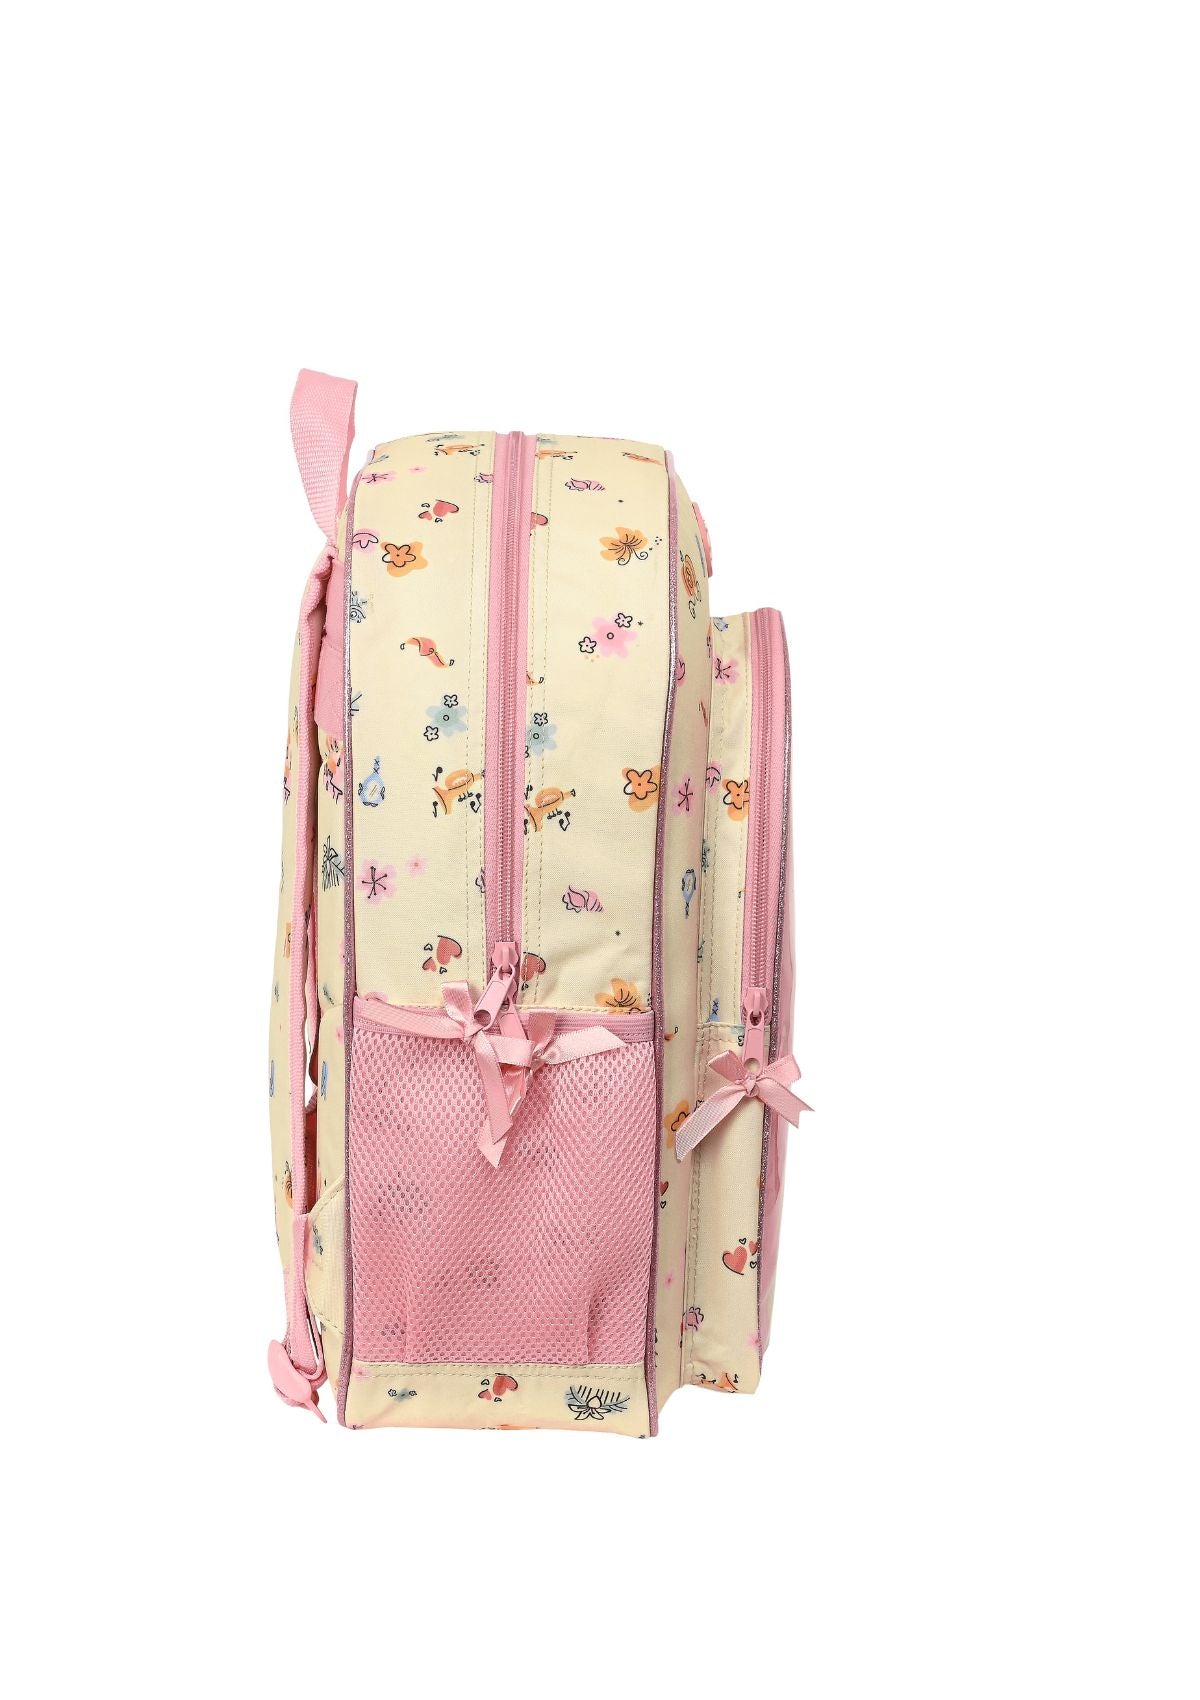 Safta Junior Backpack Disney Princess side